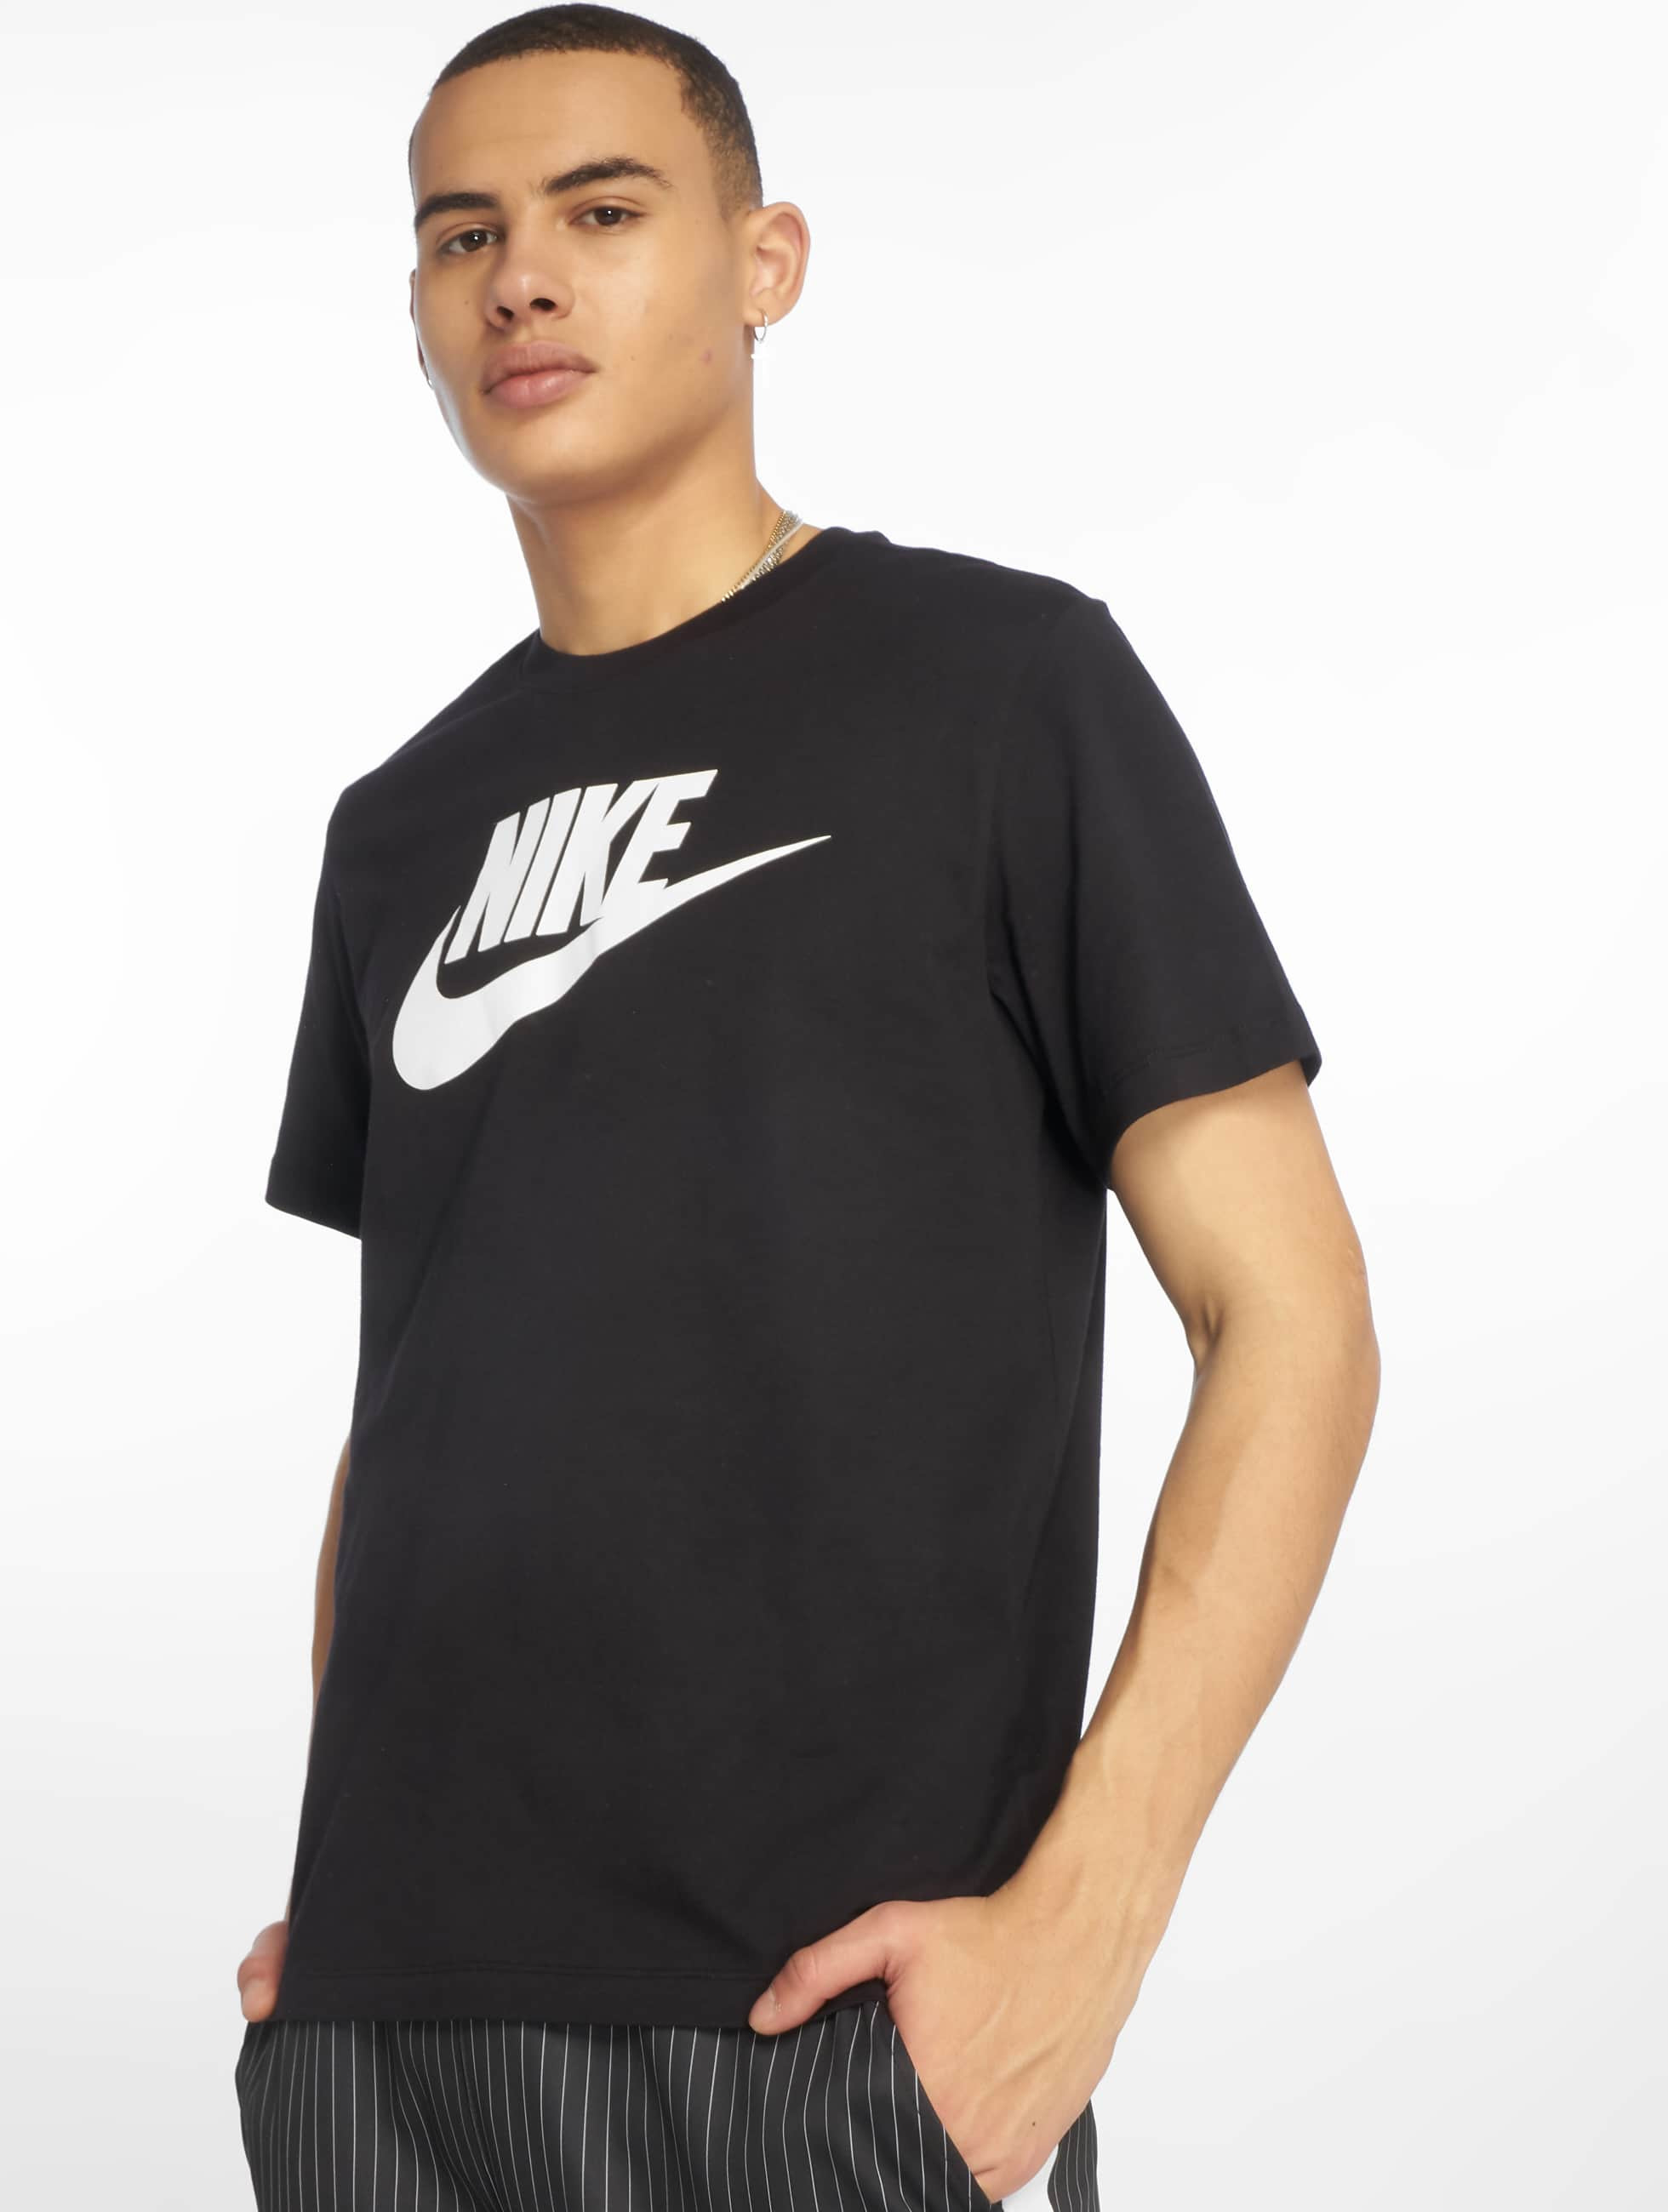 kreupel In de naam schelp Nike bovenstuk / t-shirt Sportswear in zwart 587334